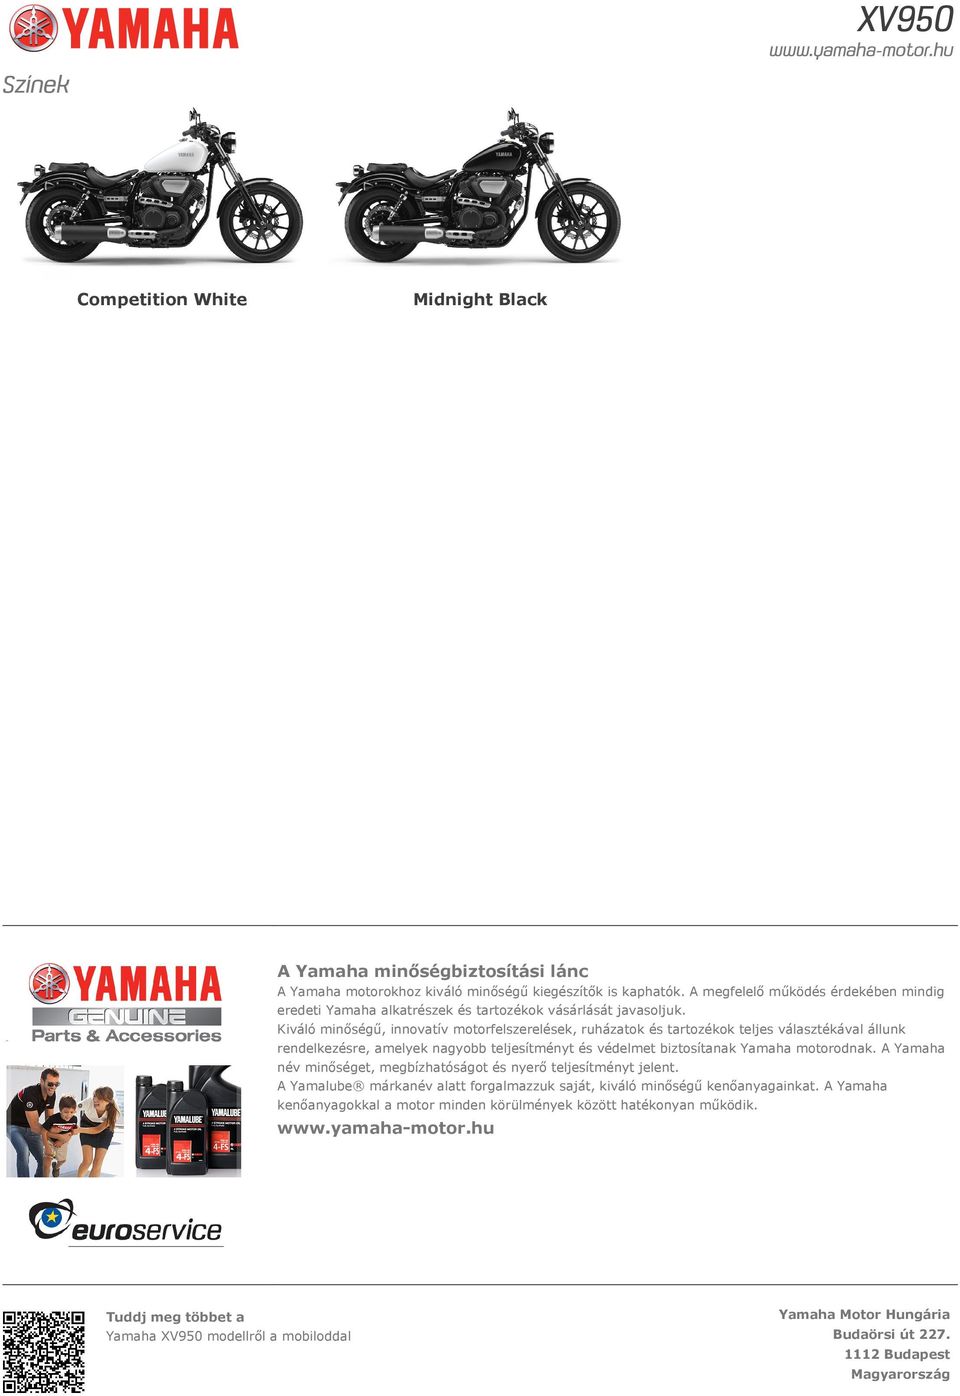 Kiváló minőségű, innovatív motorfelszerelések, ruházatok és tartozékok teljes választékával állunk rendelkezésre, amelyek nagyobb teljesítményt és védelmet biztosítanak Yamaha motorodnak.